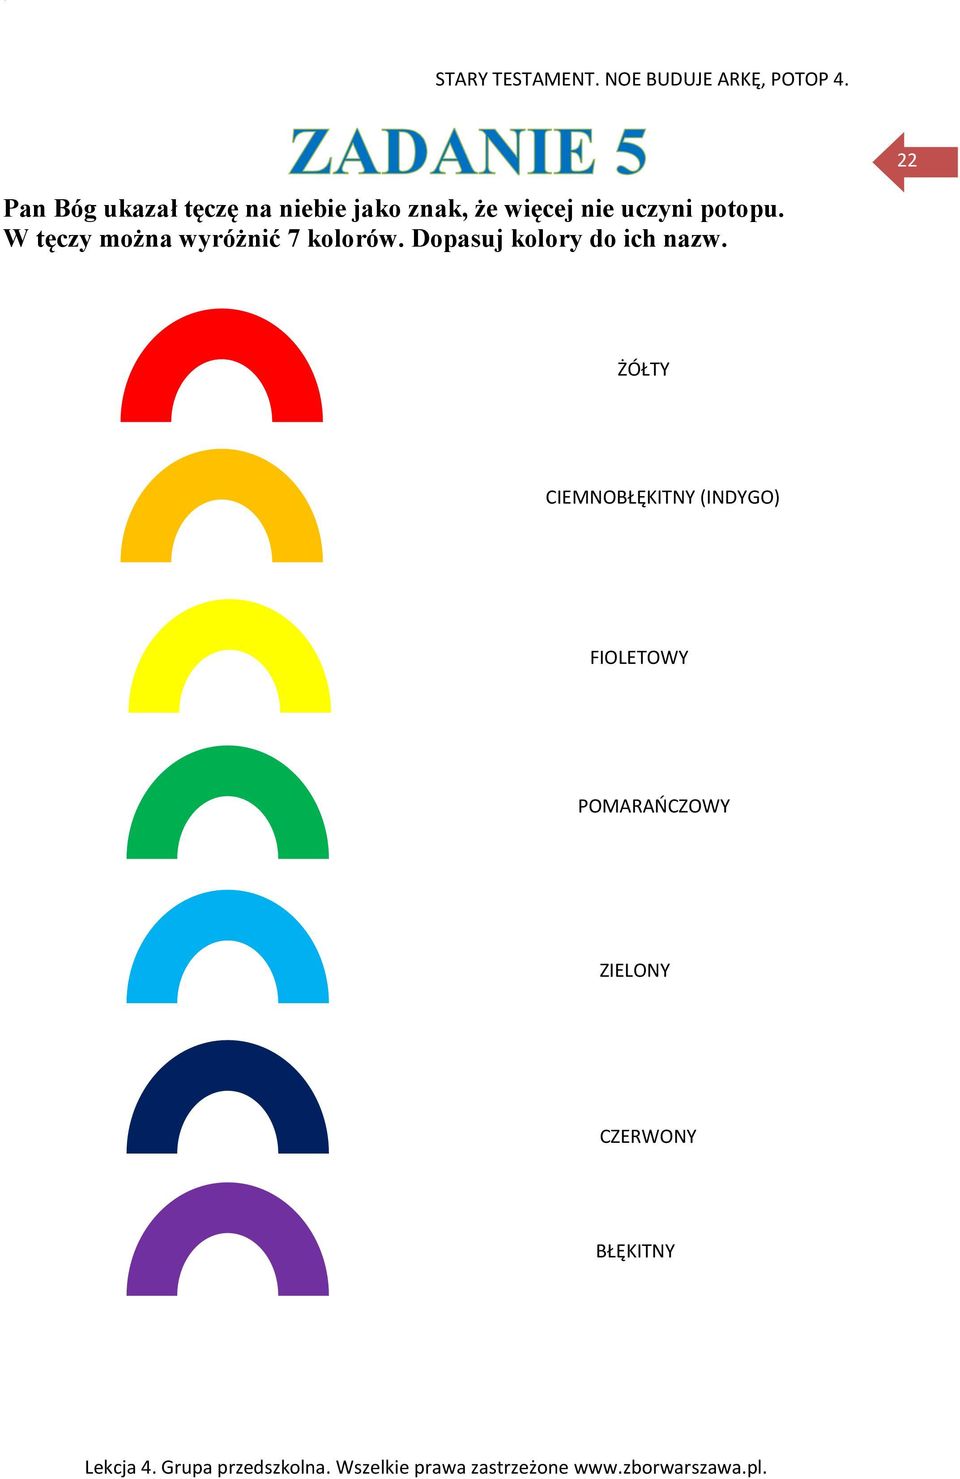 W tęczy można wyróżnić 7 kolorów.